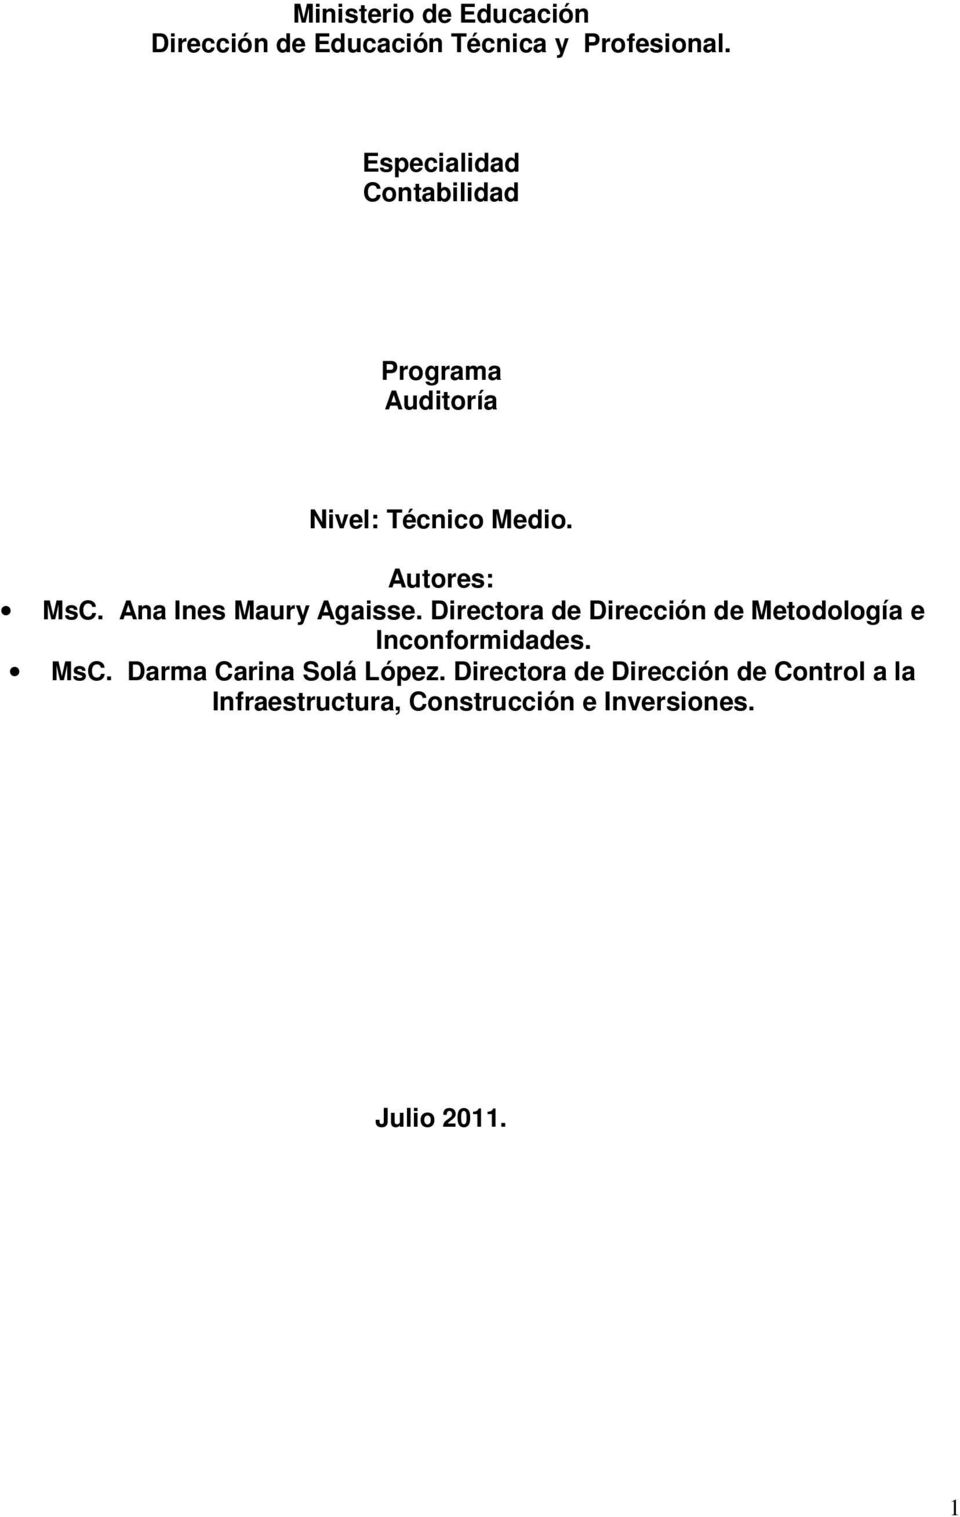 Ana Ines Maury Agaisse. Directora de Dirección de Metodología e Inconformidades. MsC.